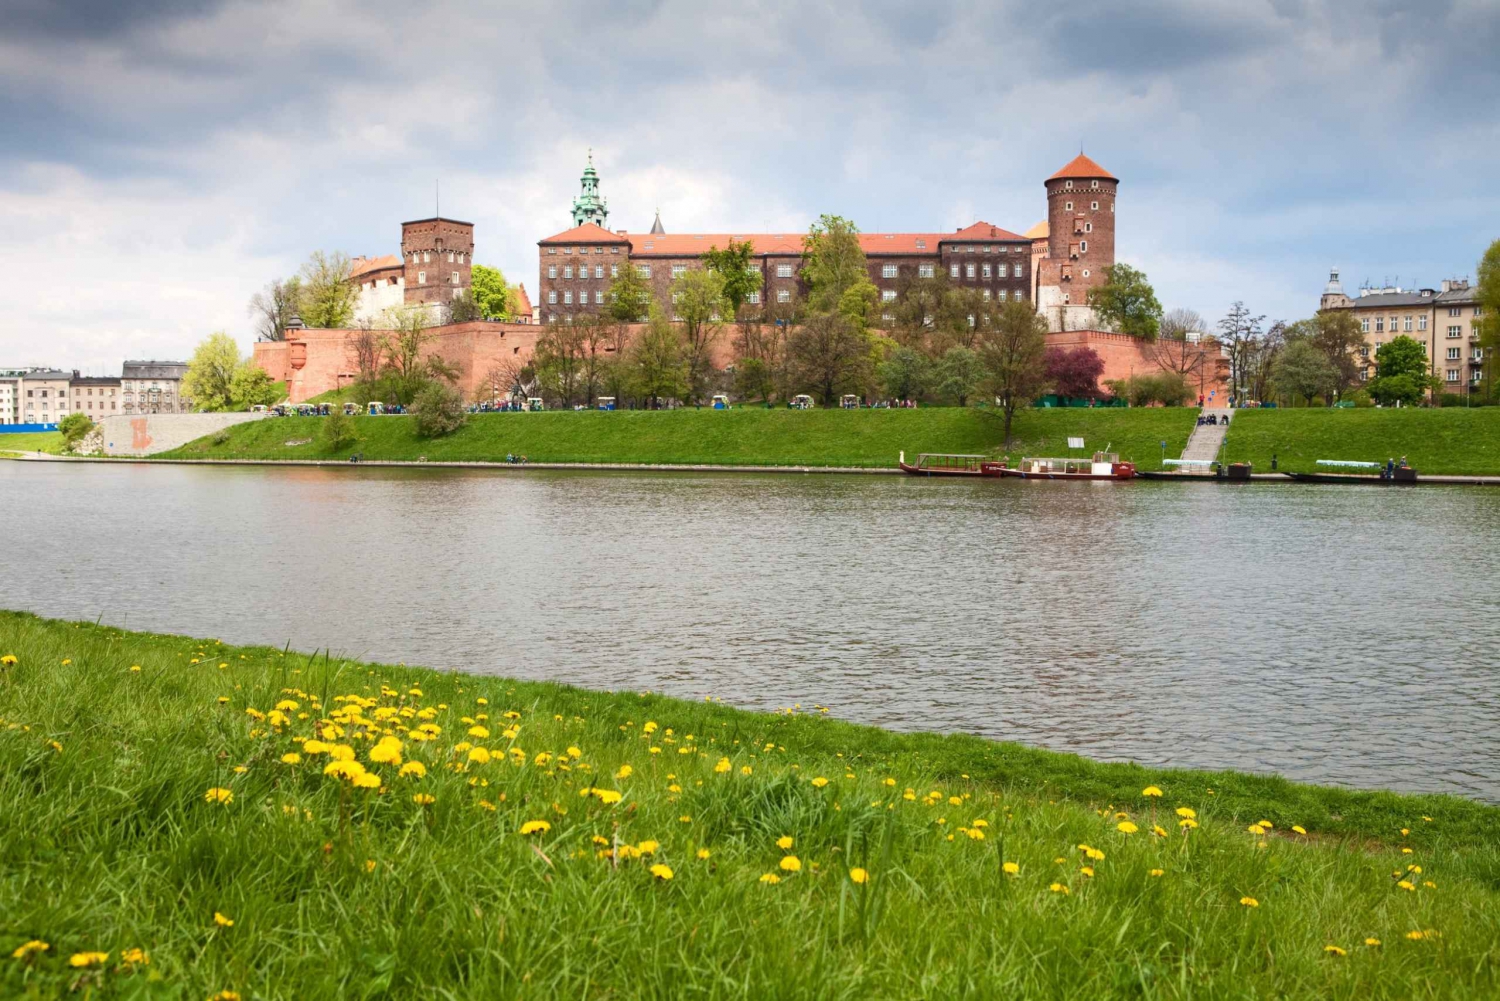 Kraków: 3-Day Wawel Castle, Wieliczka, and Auschwitz Tour